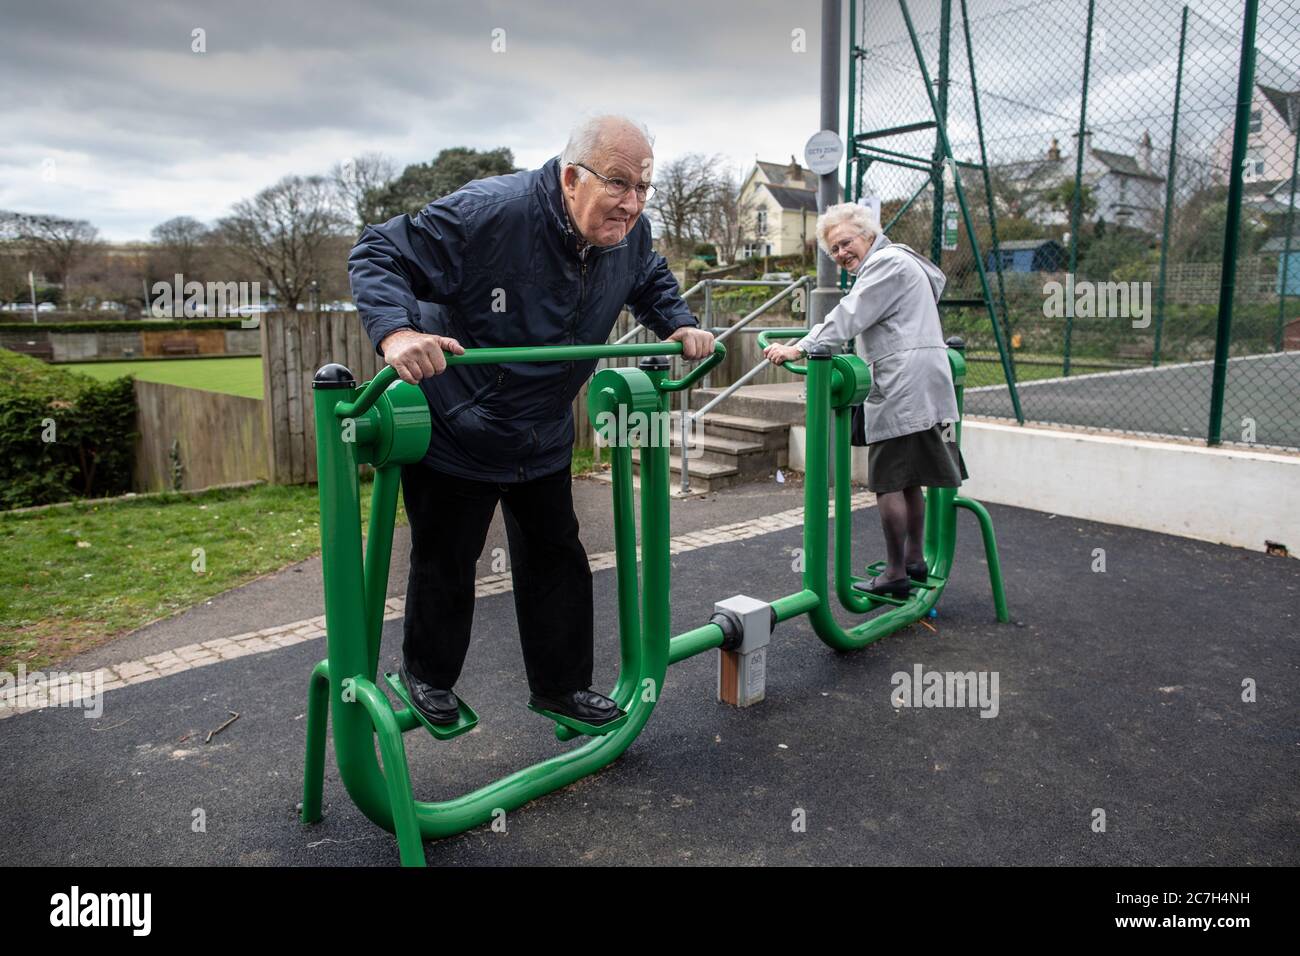 Coppie anziane negli anni ottanta in un parco di esercizi che provano insieme l'apparecchio, Kingsbridge, Devon, Inghilterra, Regno Unito Foto Stock